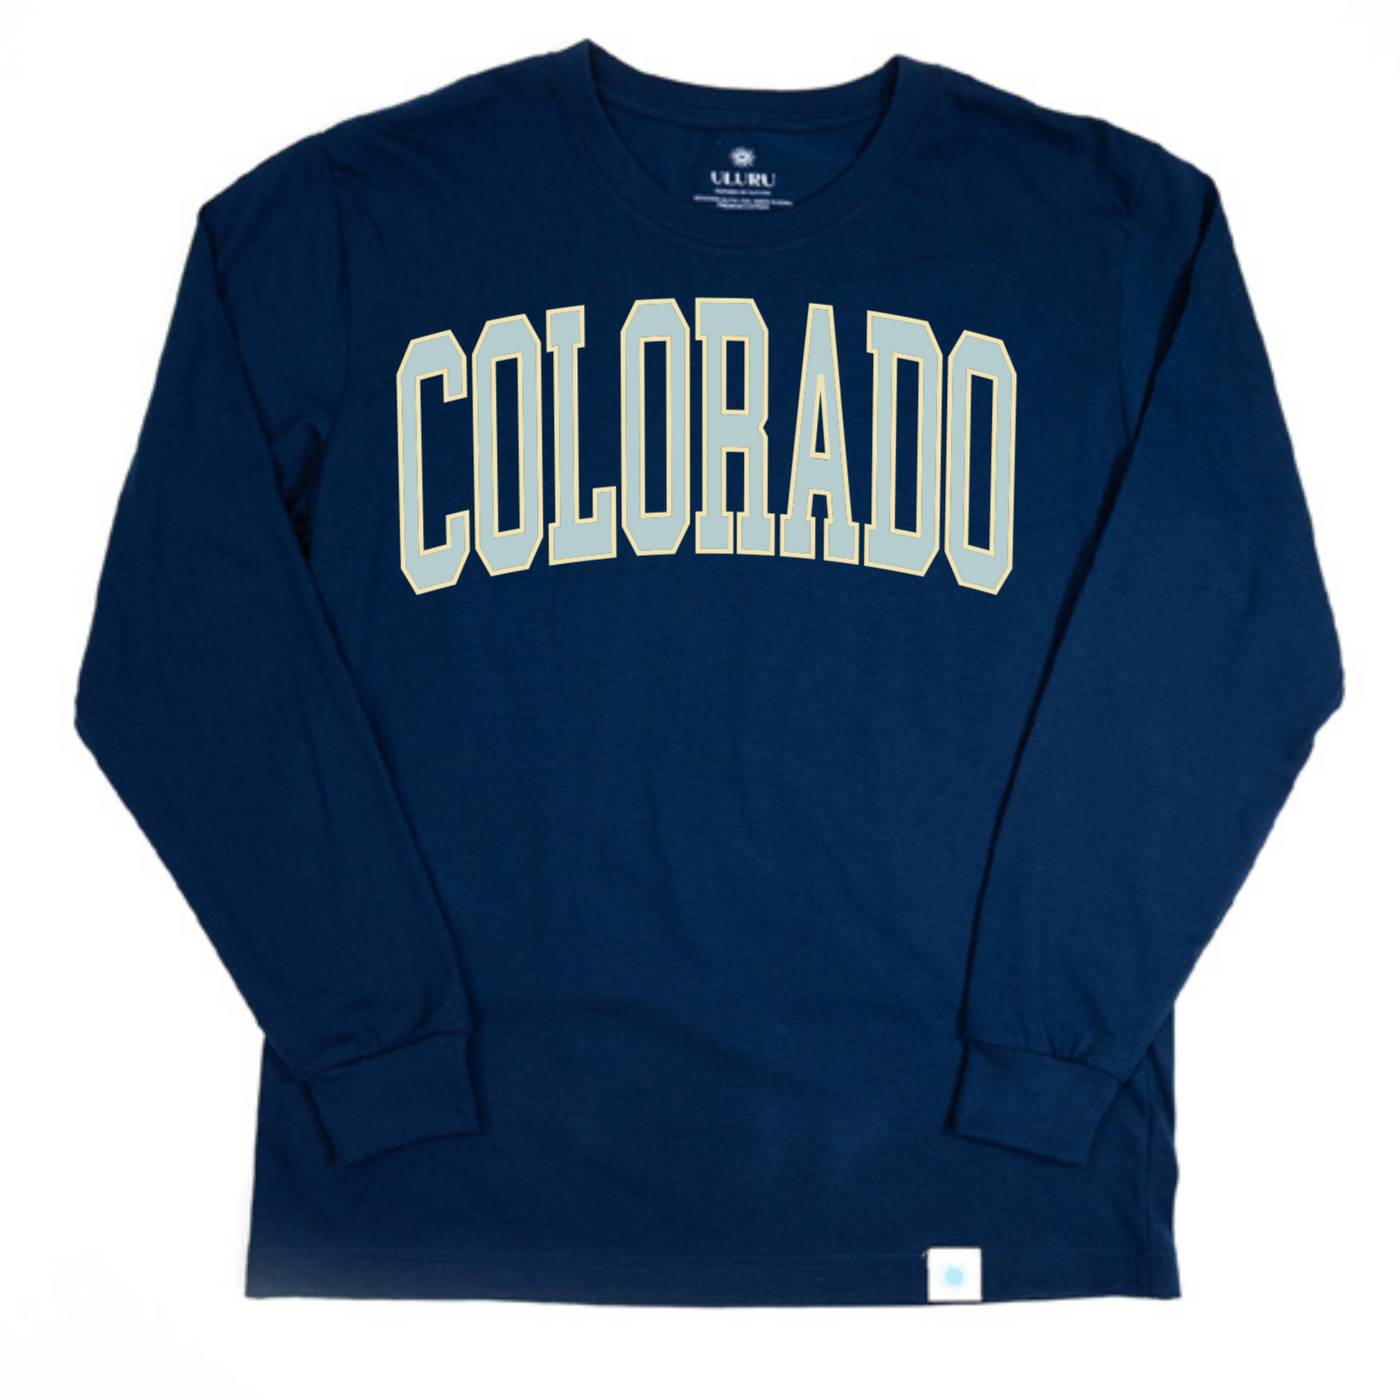 Collegiate Colorado Navy Long Sleeve Shirt